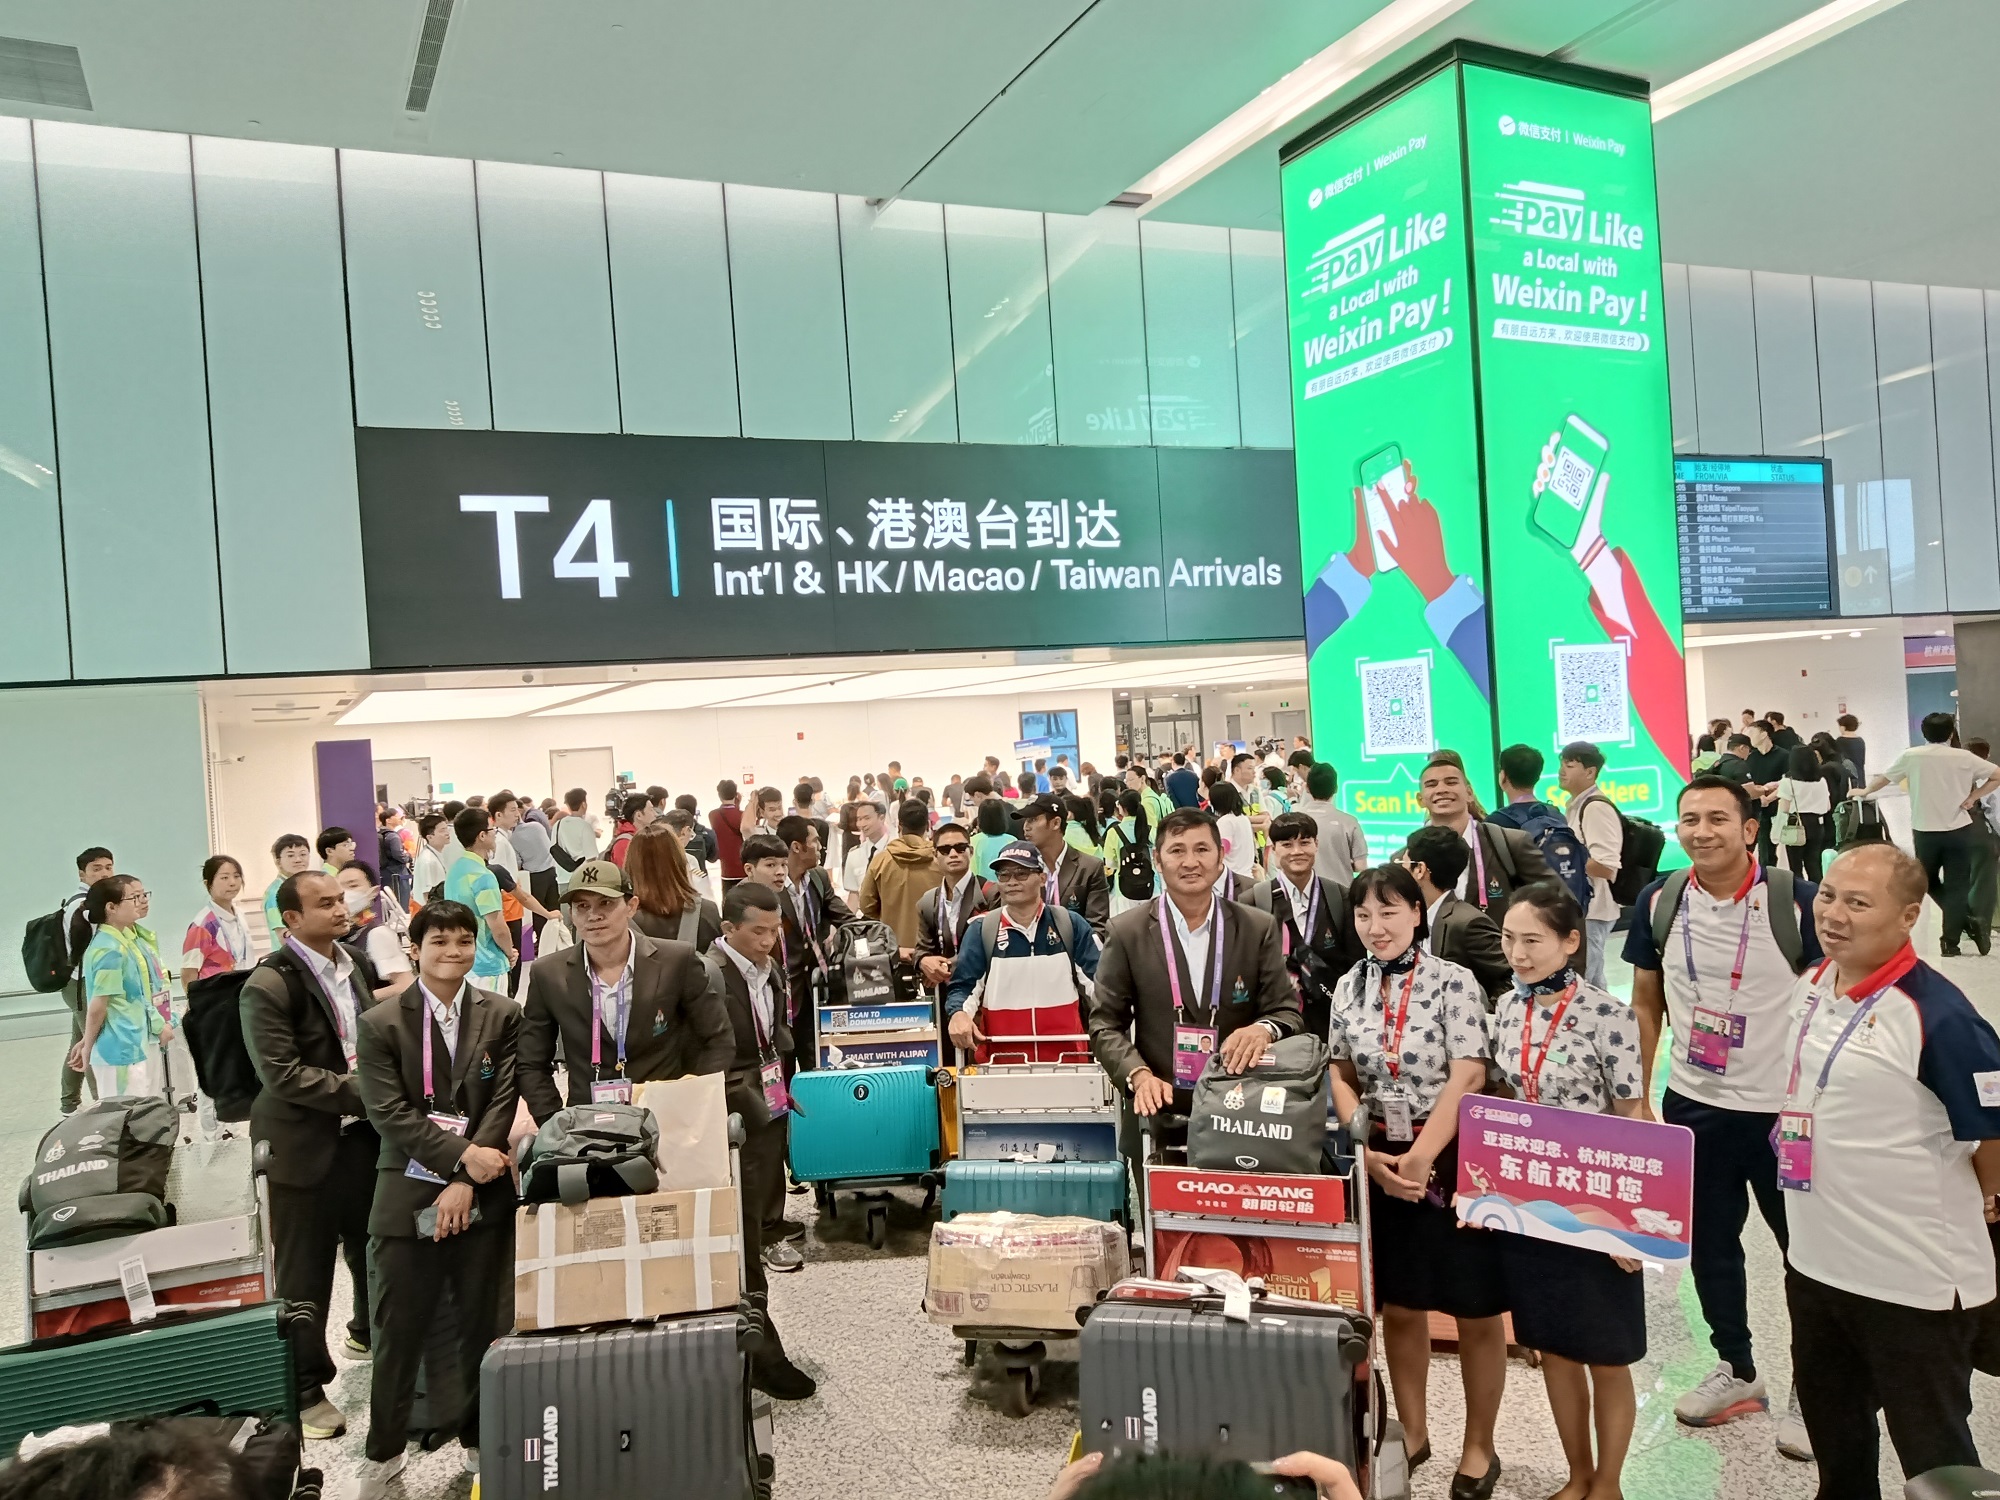 杭州亚运会航空运输保障迎高峰!东航21日将保障366名亚运人员抵达杭州、宁波等地